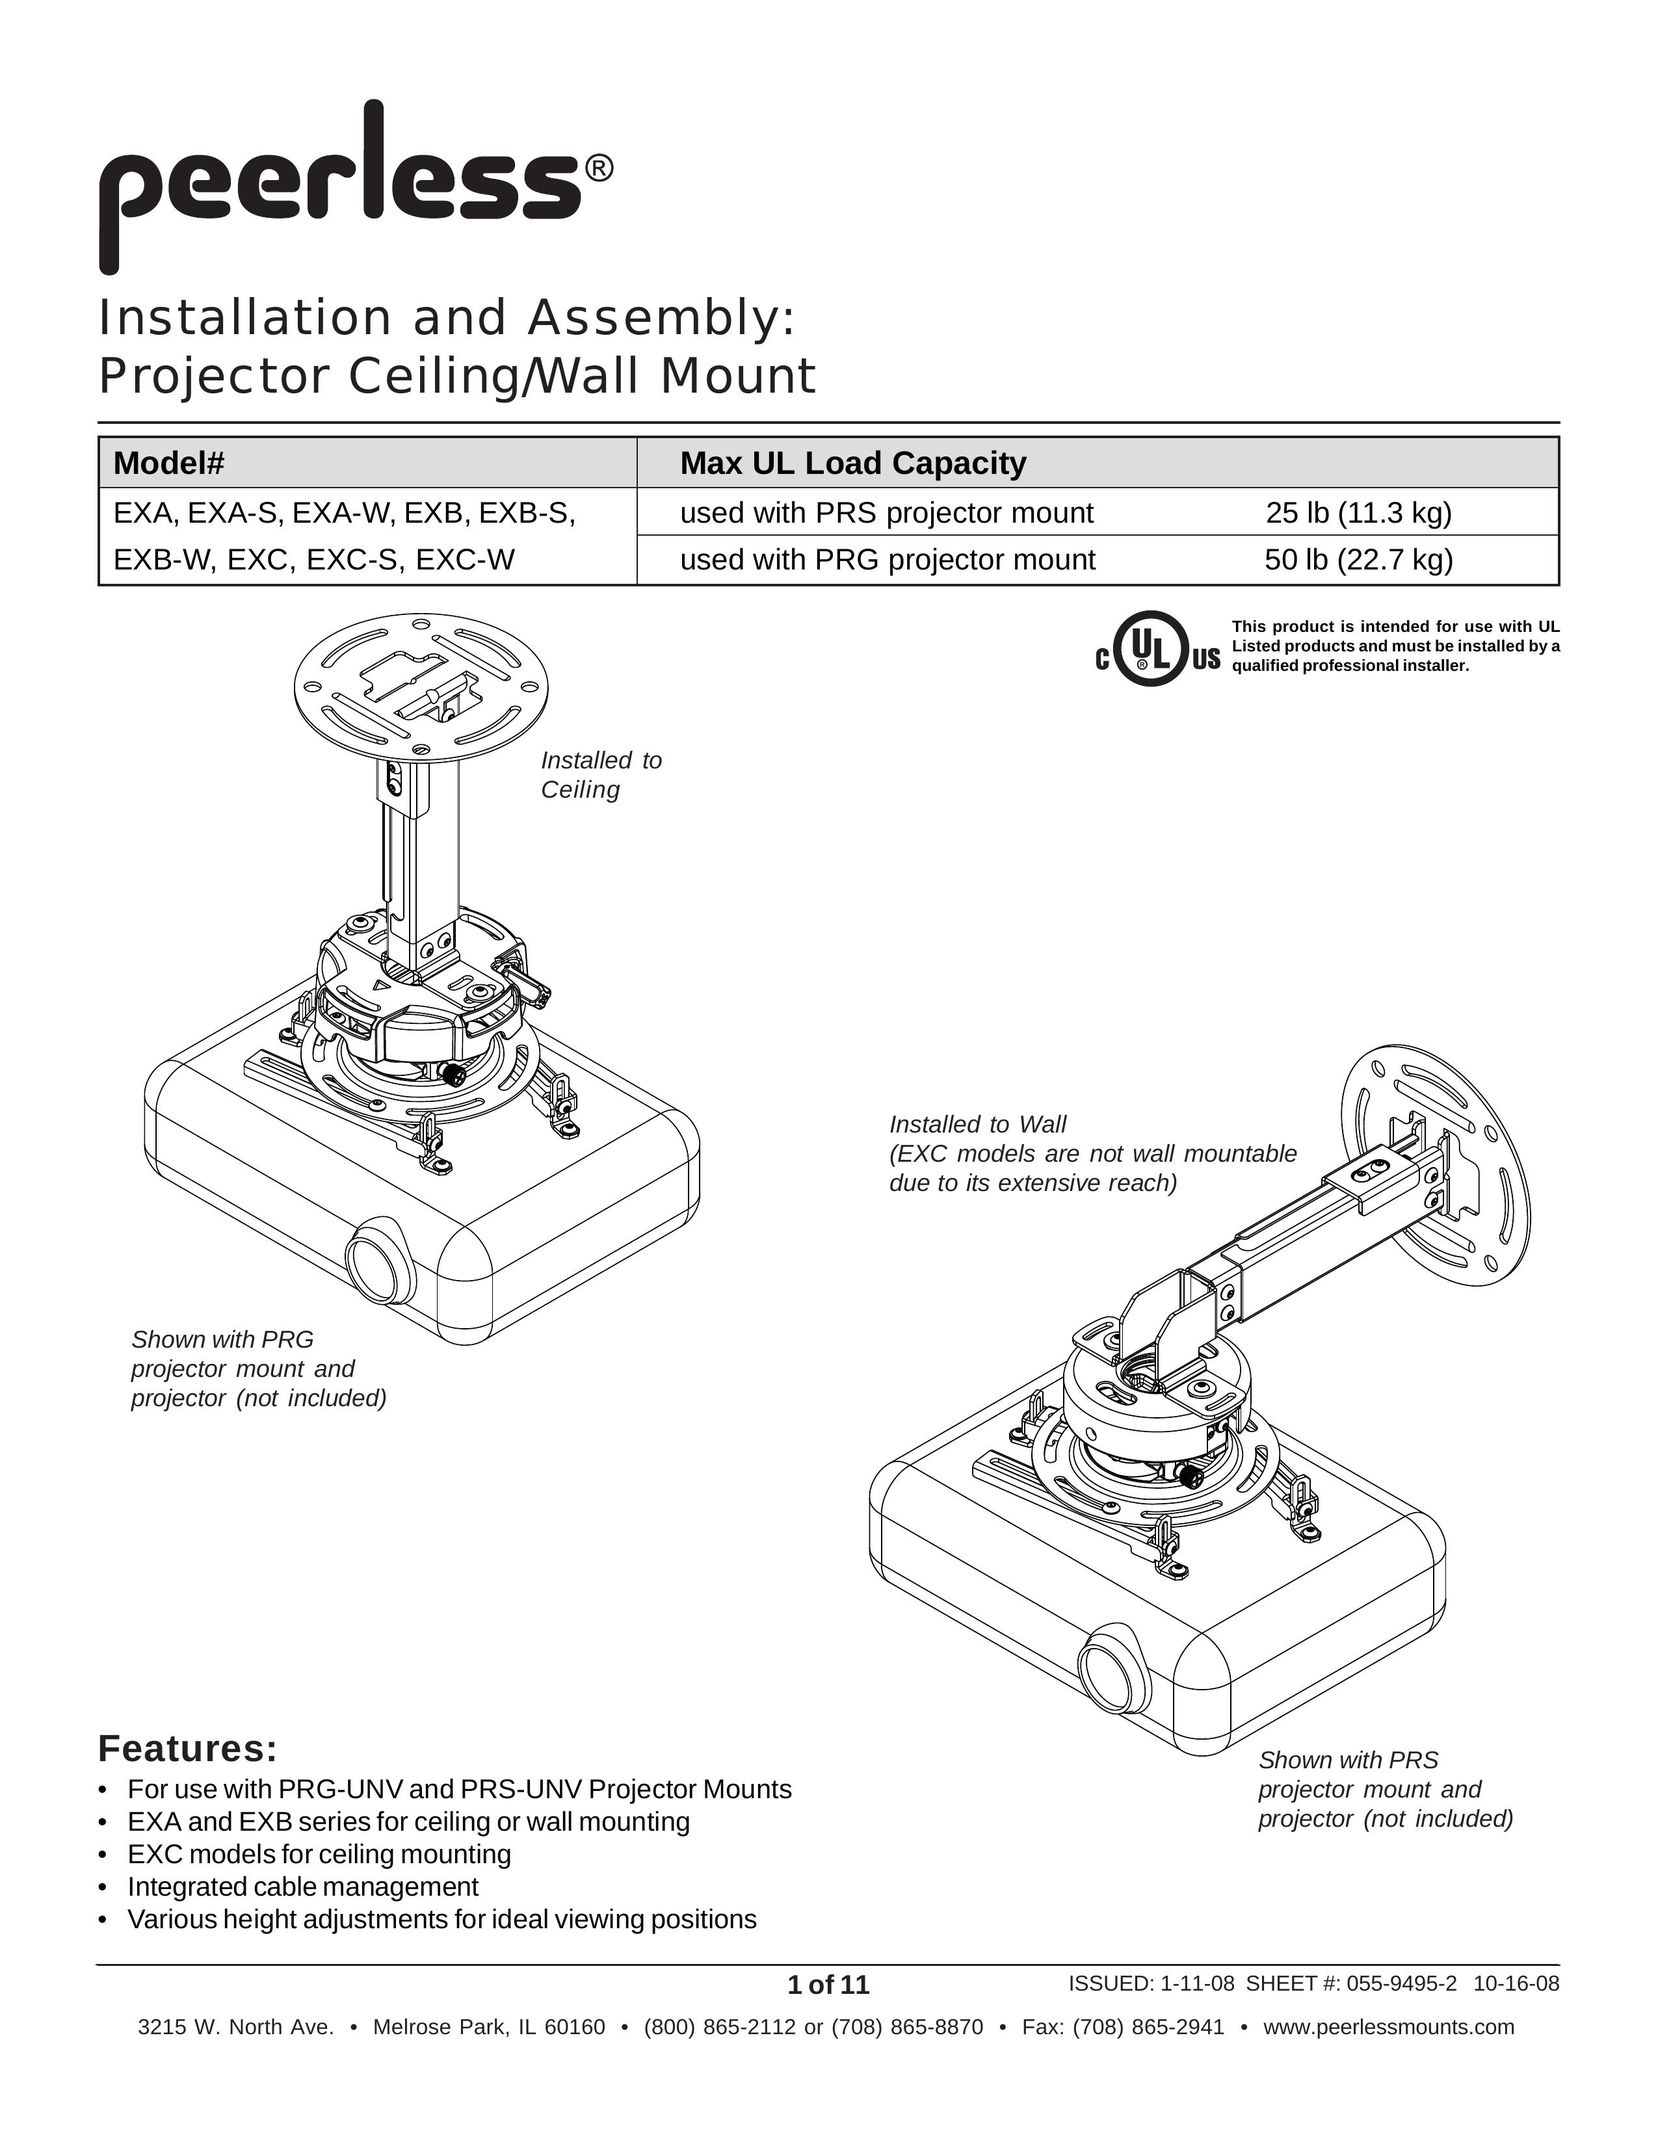 Peerless Industries EXC Projector User Manual